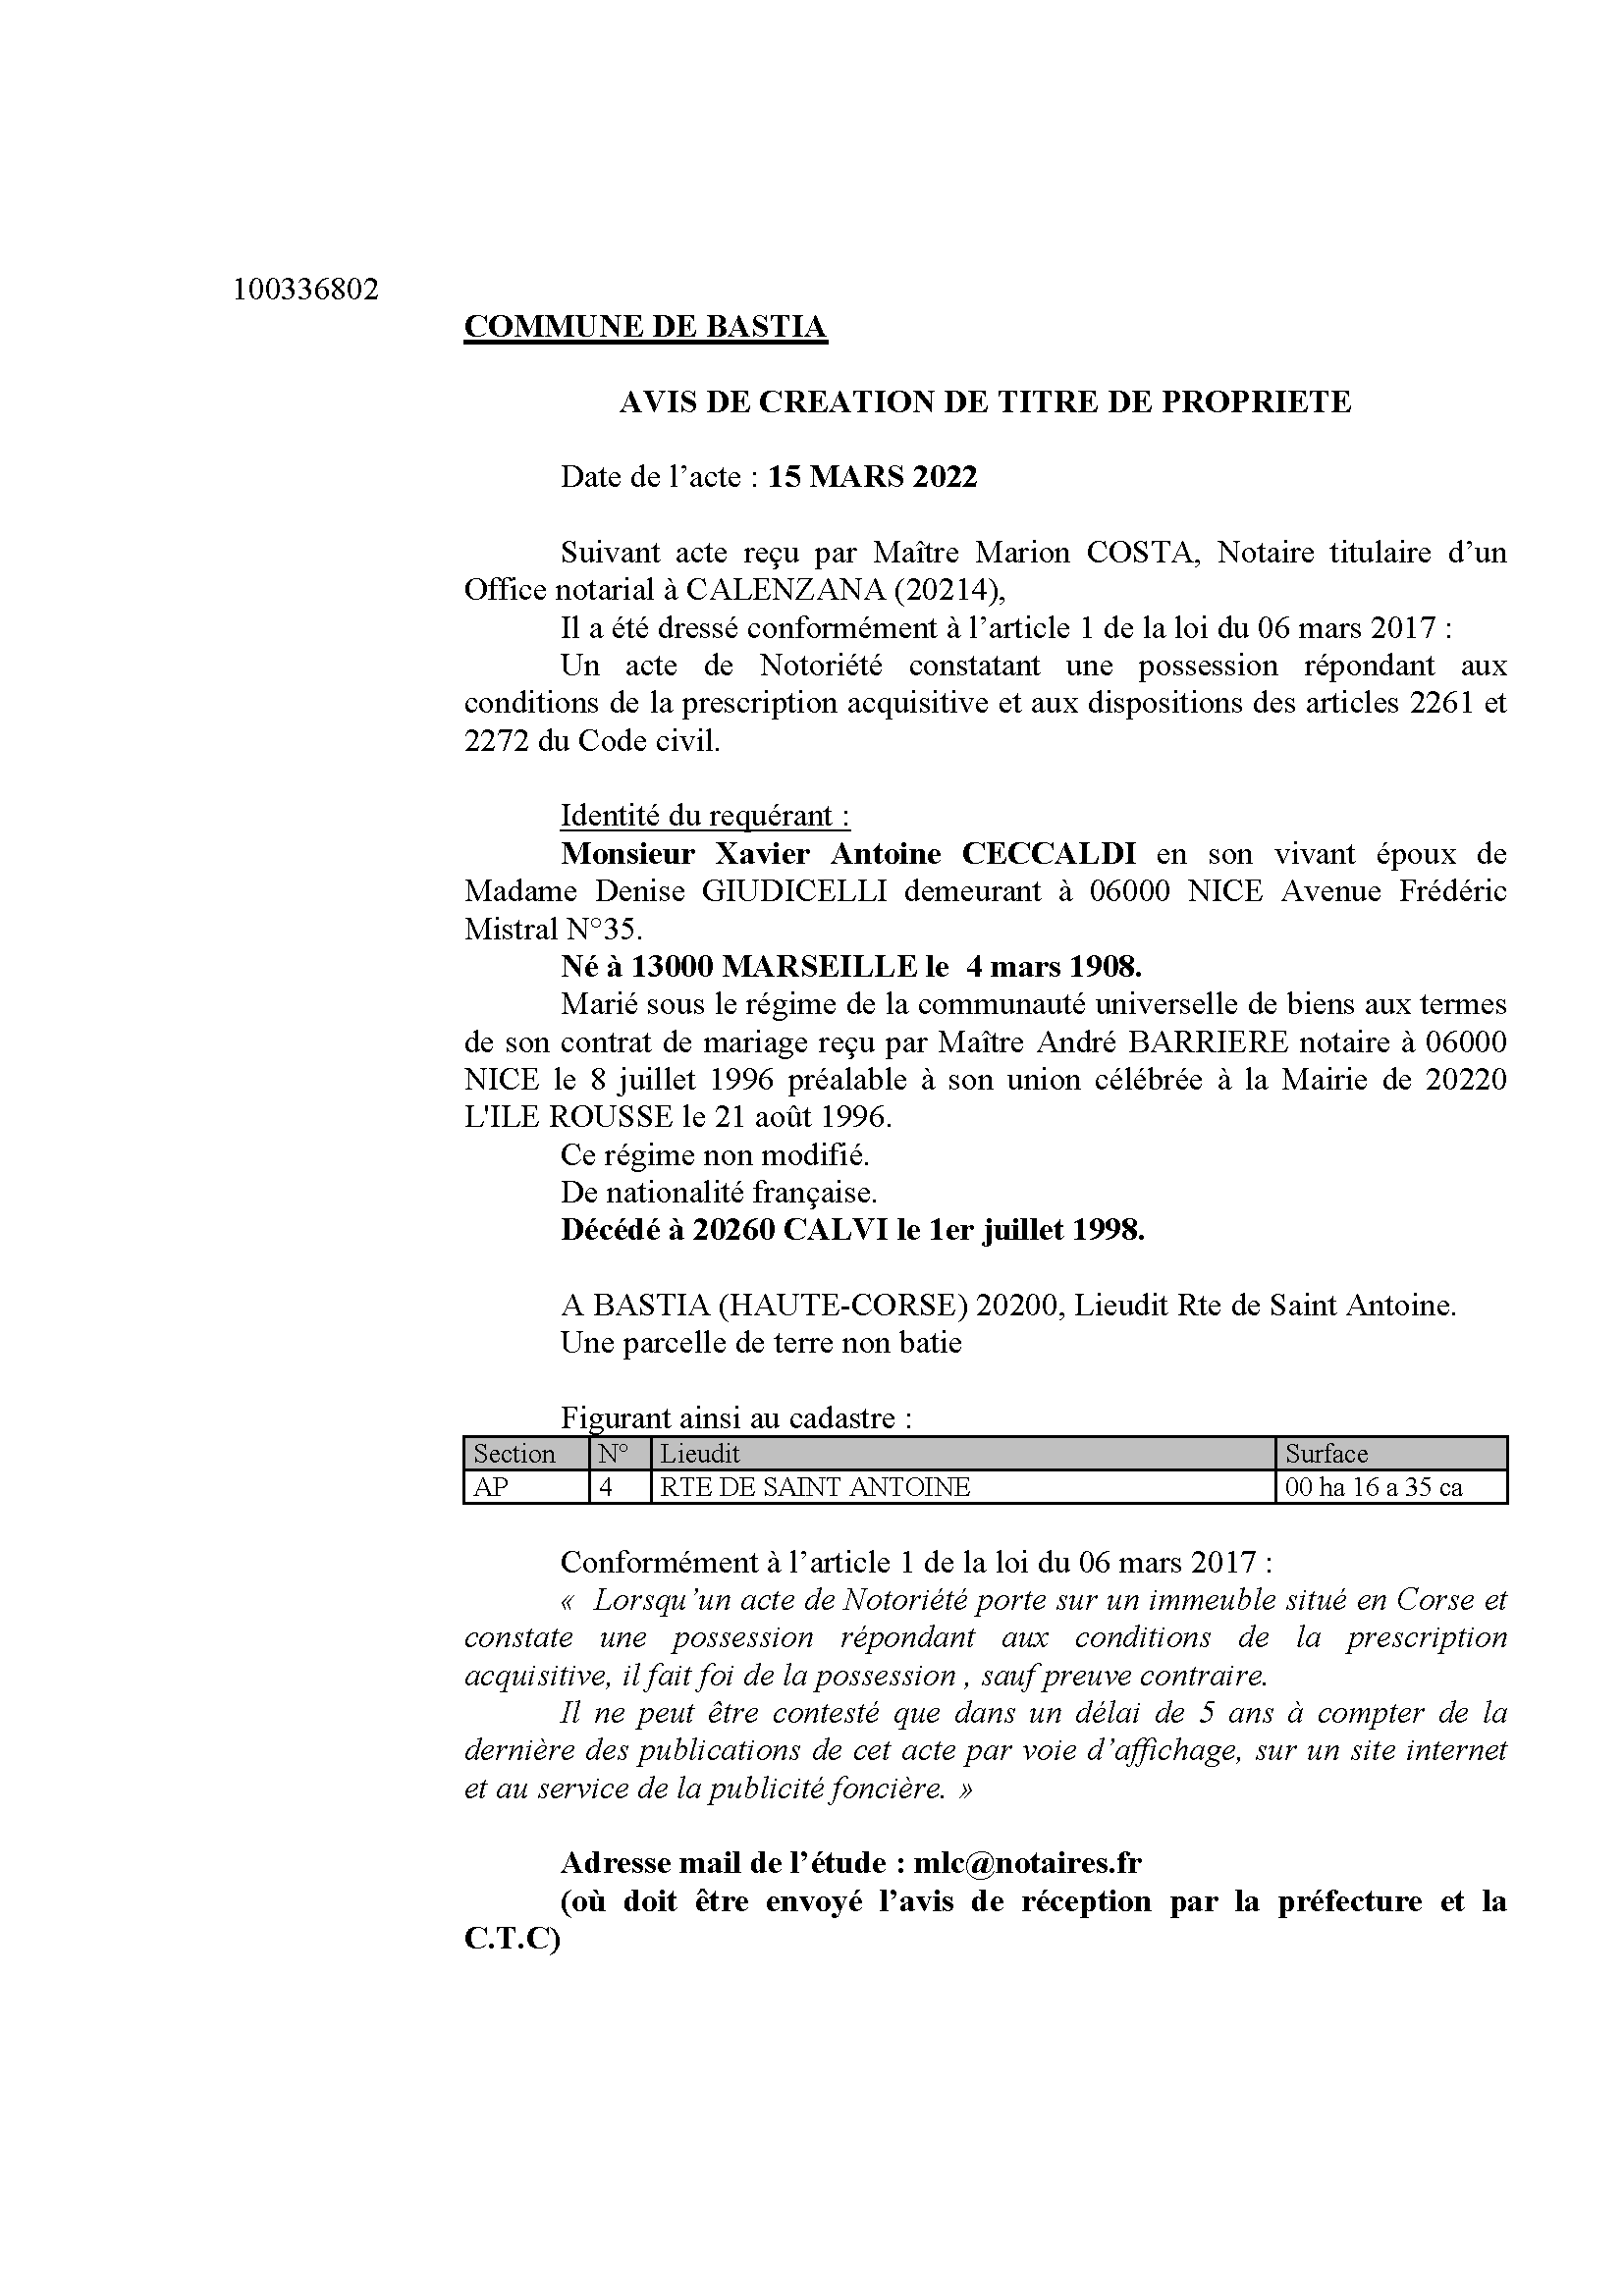 Avis de création de titre de propriété -Commune de Bastia (Haute-Corse) 